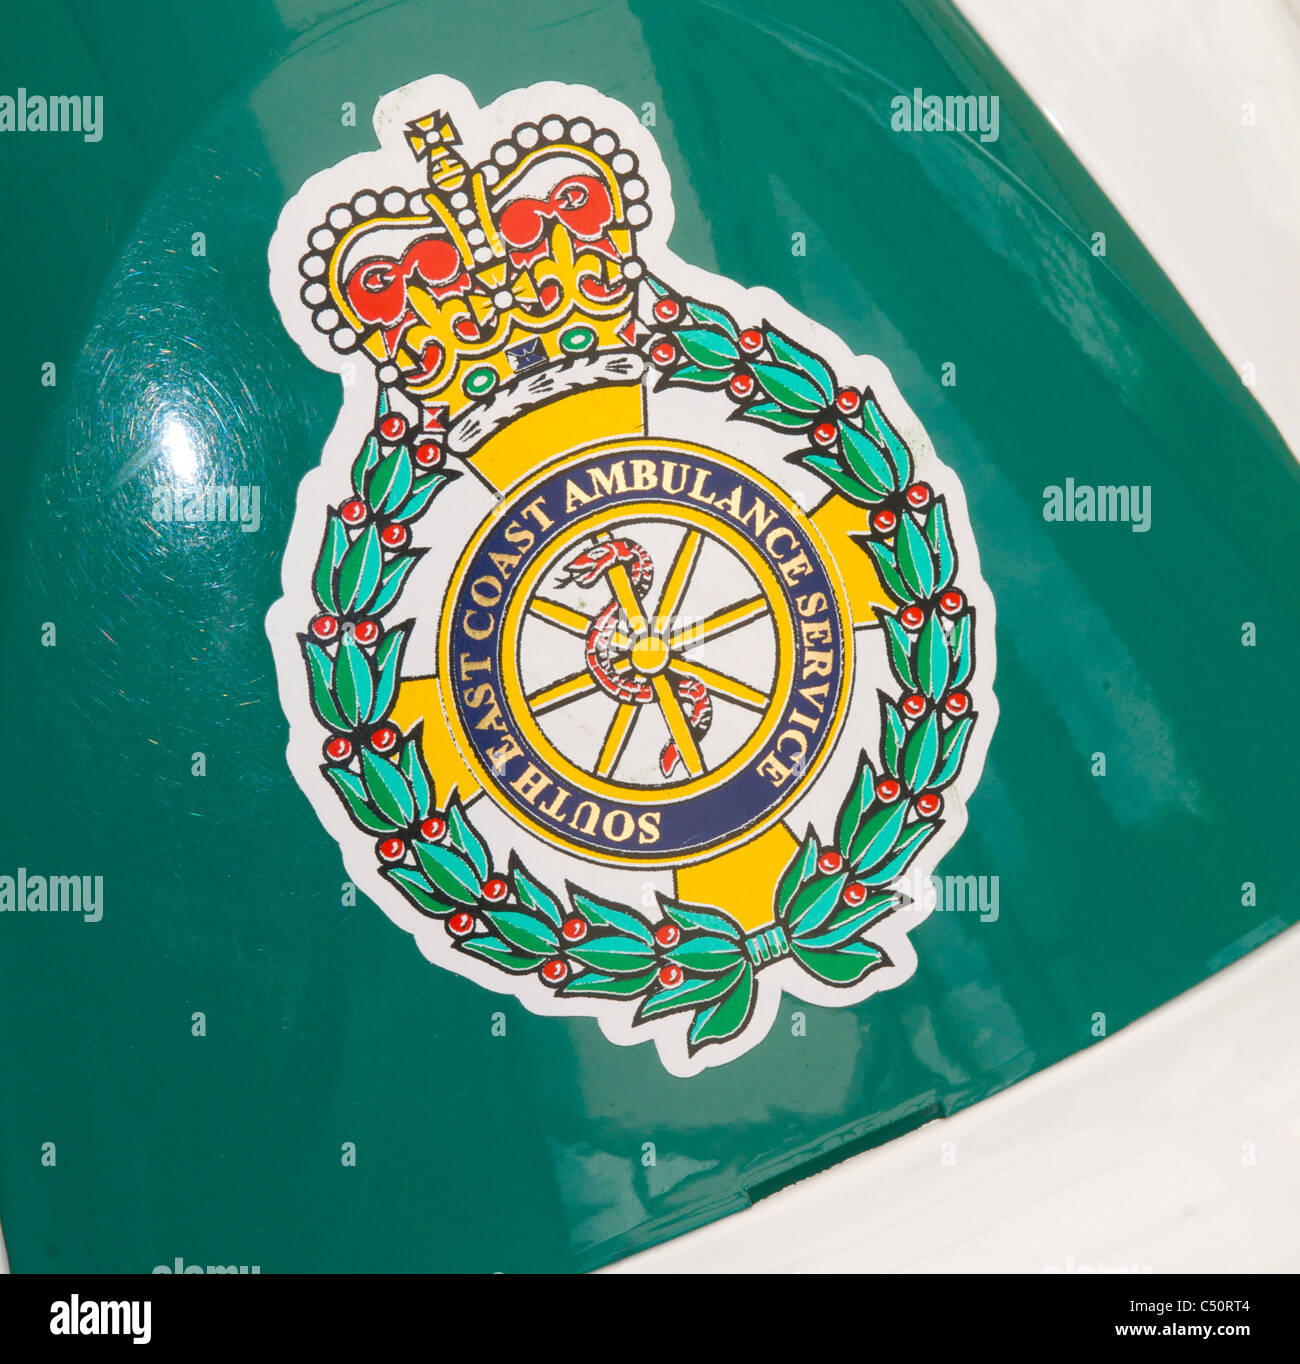 Costa sud orientale del servizio ambulanza SECAMB badge - solo uso editoriale Foto Stock